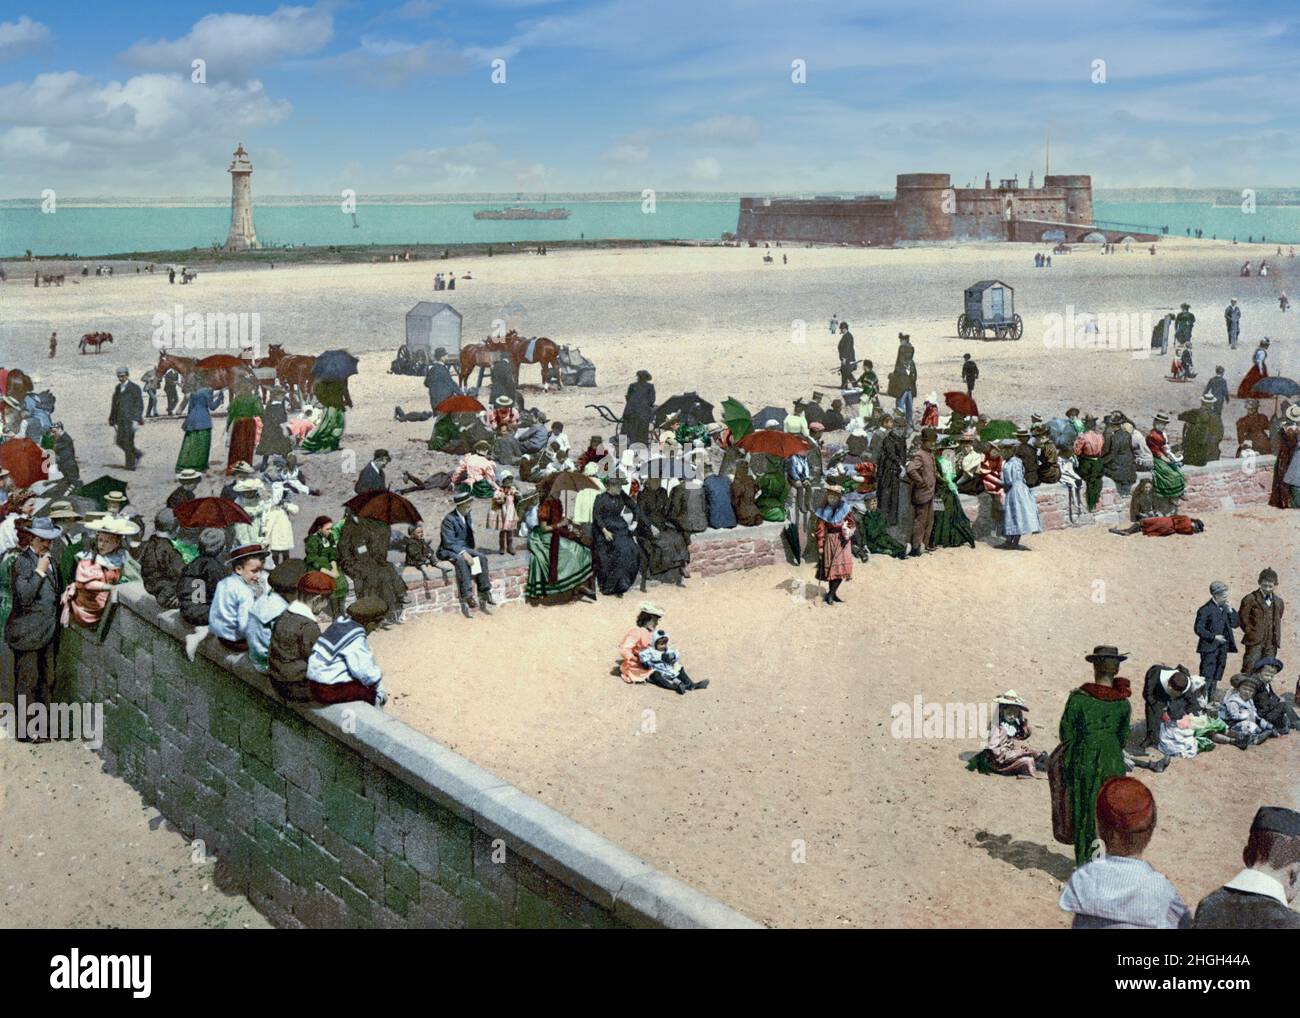 Illustration de la fin du 19th siècle des vacanciers sur la plage de New Brighton sur la péninsule Wirral à l'embouchure de la rivière Mersey.Au bord de l'eau, vous pourrez voir le phare de Perch Rock et le fort Perch Rock de l'époque napoléonienne. Banque D'Images